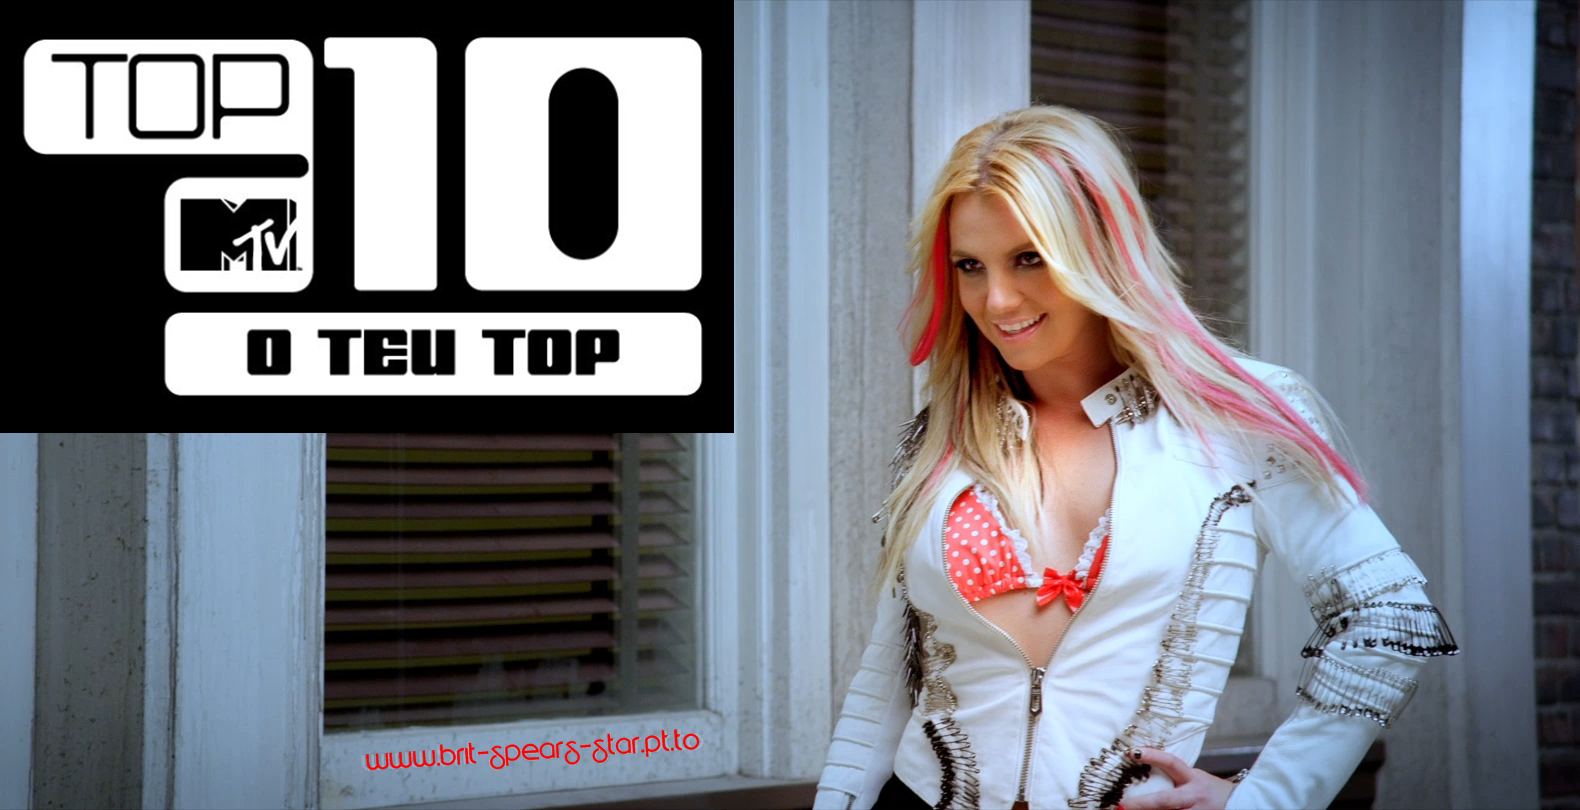 http://3.bp.blogspot.com/-XRRJ2Q8Qtj8/TlVnne-UFfI/AAAAAAAAFUk/fRkBBeE8bS0/s1600/Britney+Spears+-+I+Wanna+Go+-+MTV+TOP+10+-+brit-spears-star.pt.to.png